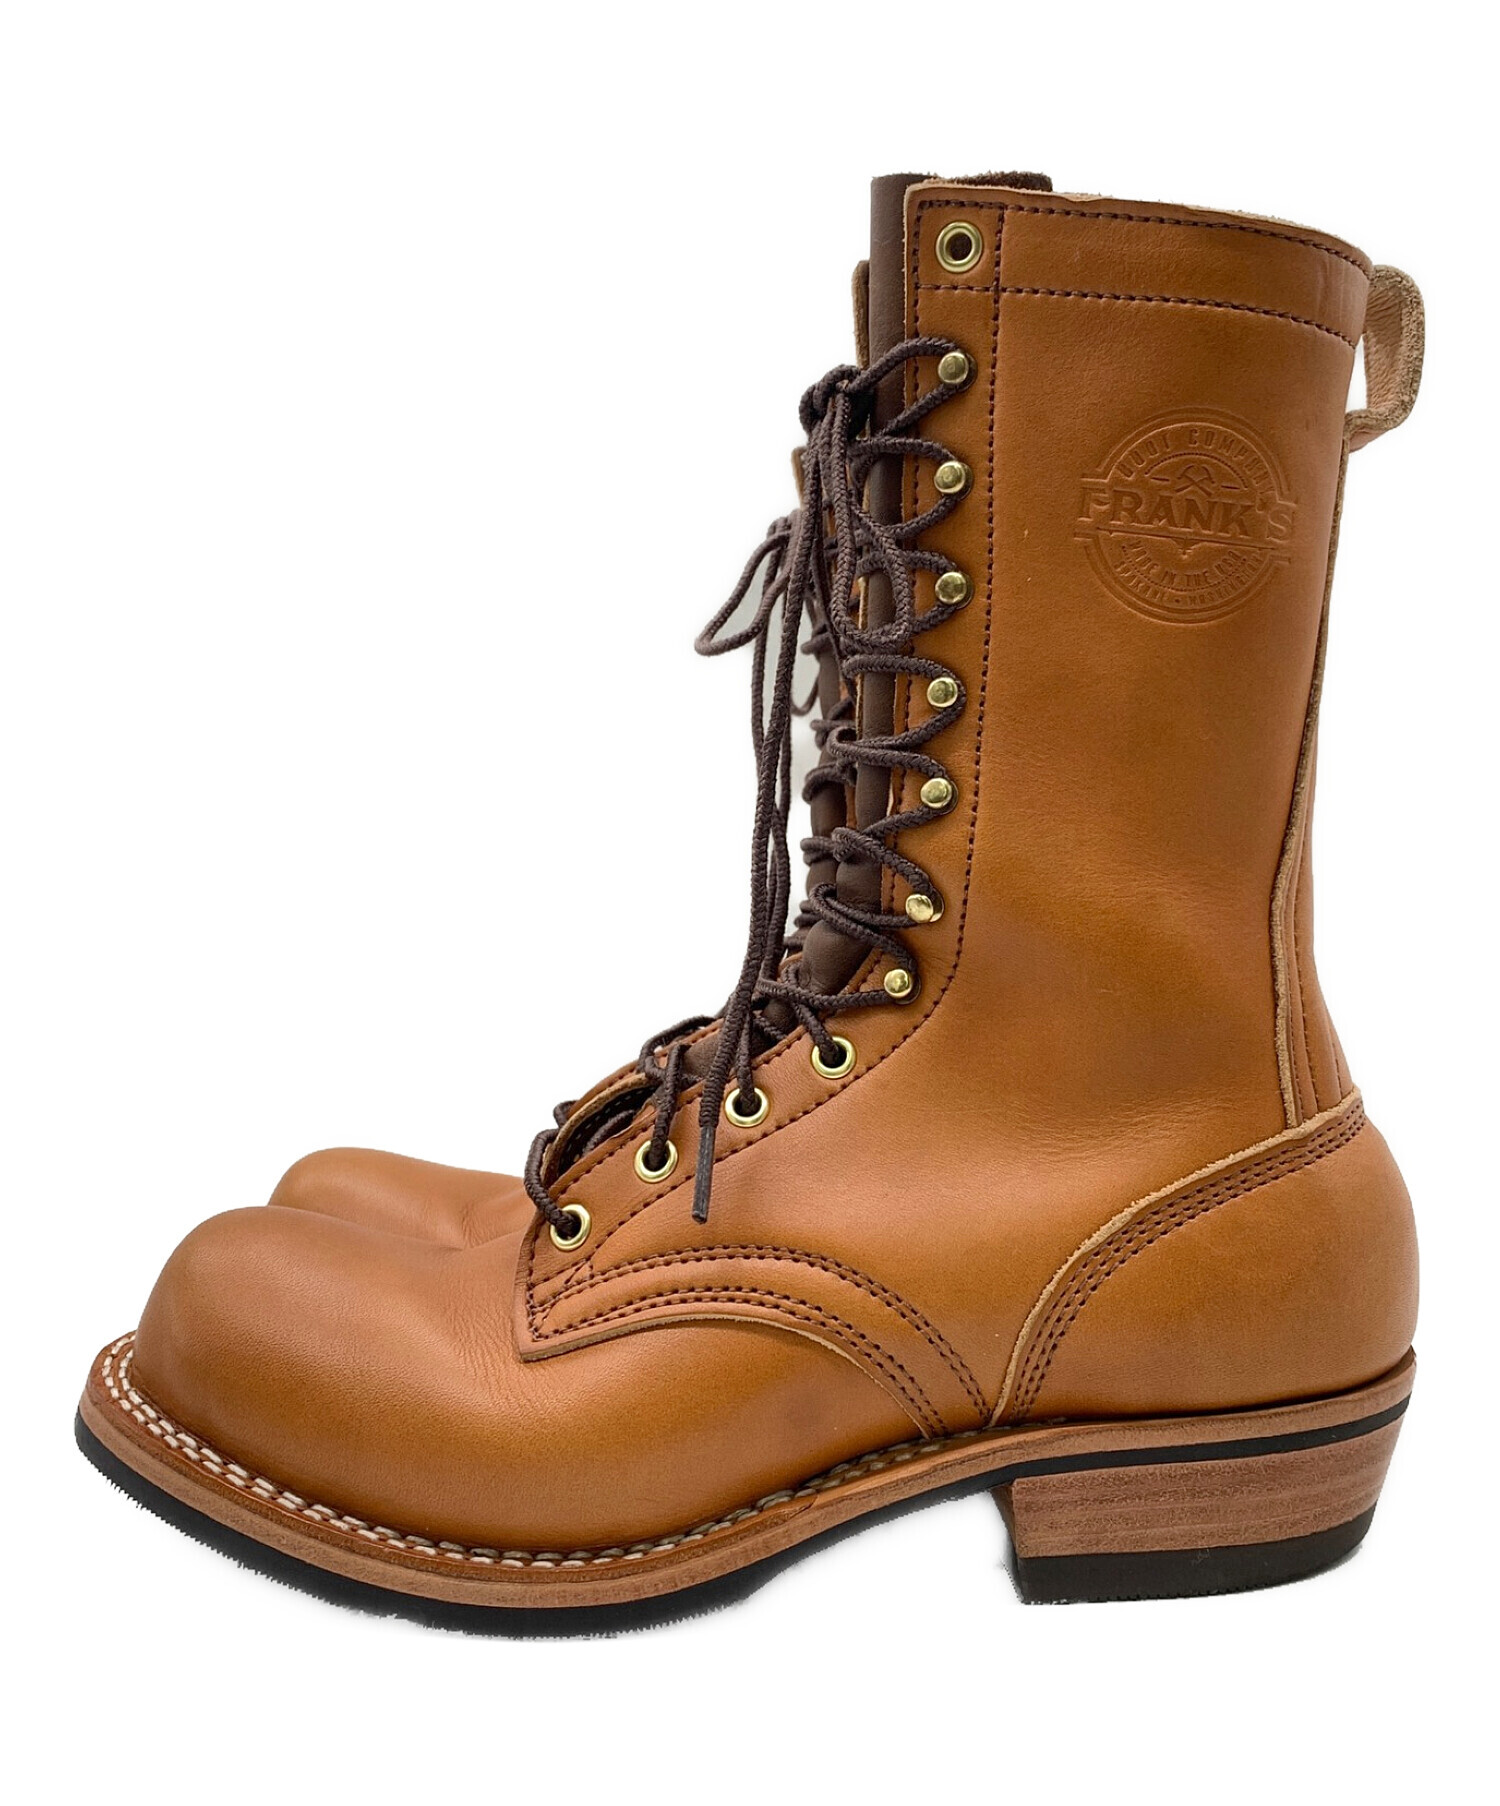 franks boot company (フランクブーツ) カスタムブーツ ブラウン サイズ:7EE